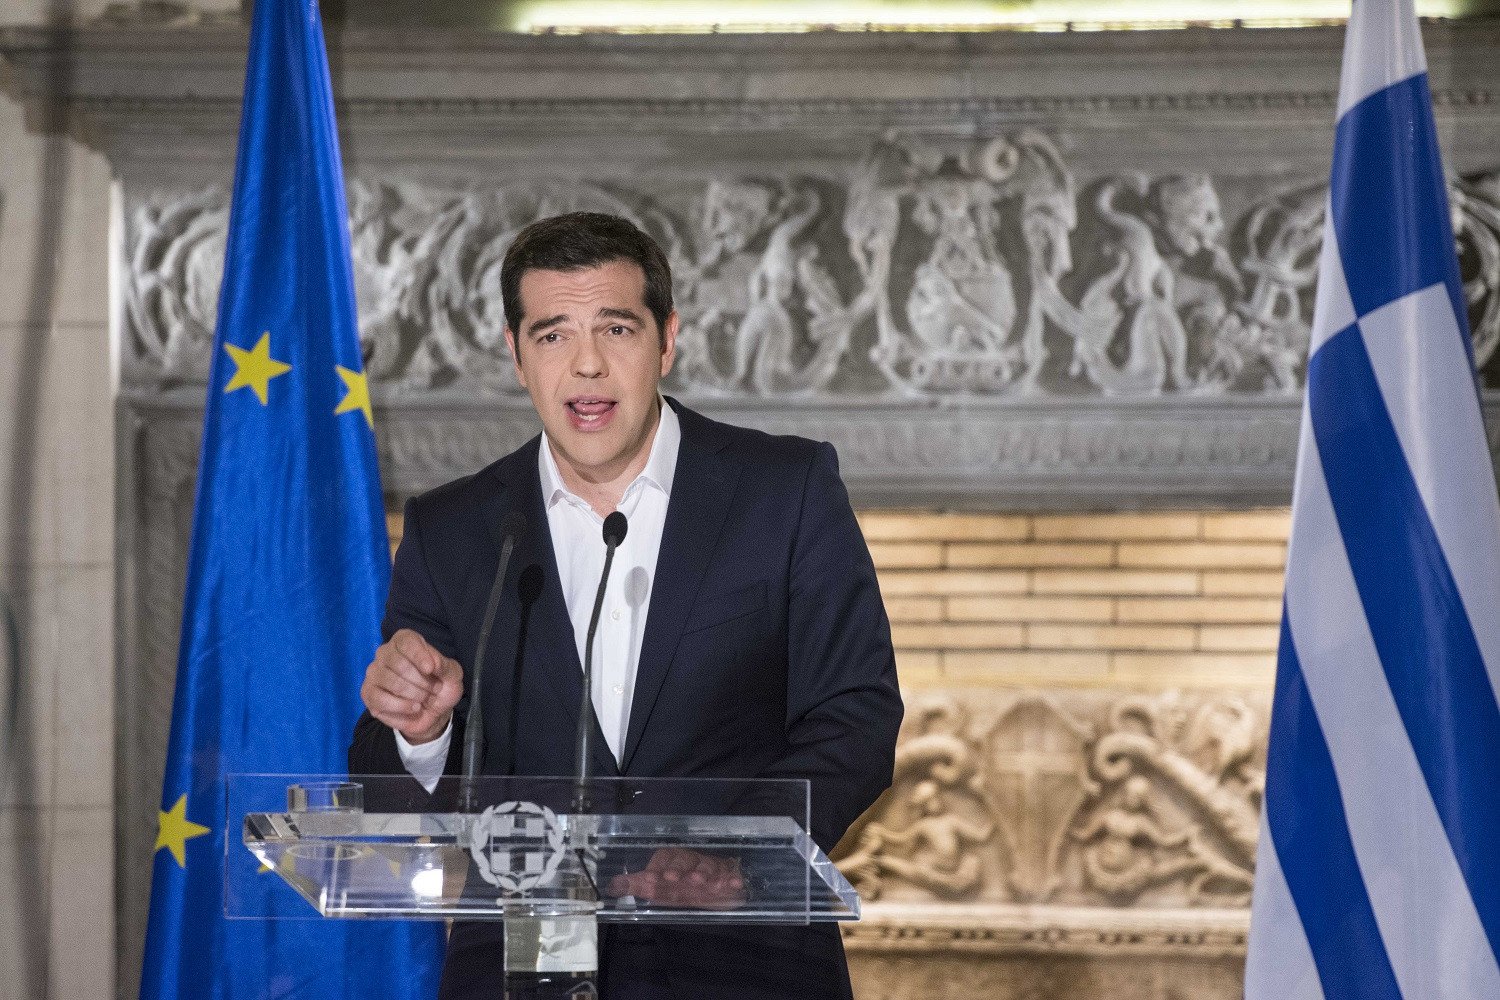 Σαν σήμερα το 2015 ο Αλέξης Τσίπρας προκηρύσσει δημοψήφισμα για τις 5 Ιουλίου